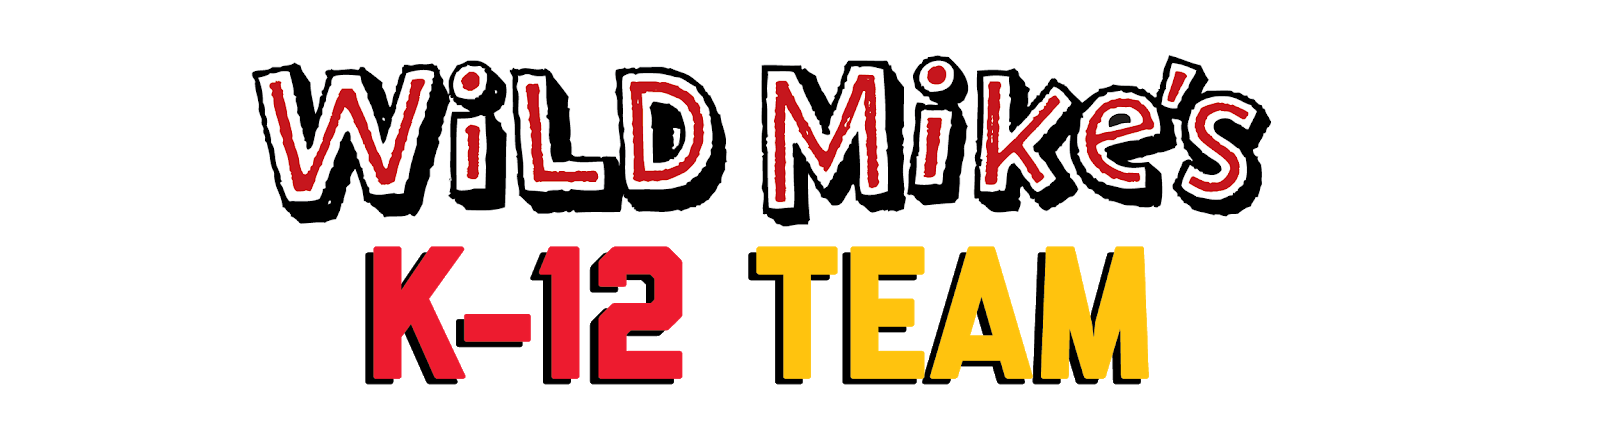 Wild Mike's K-12 Team